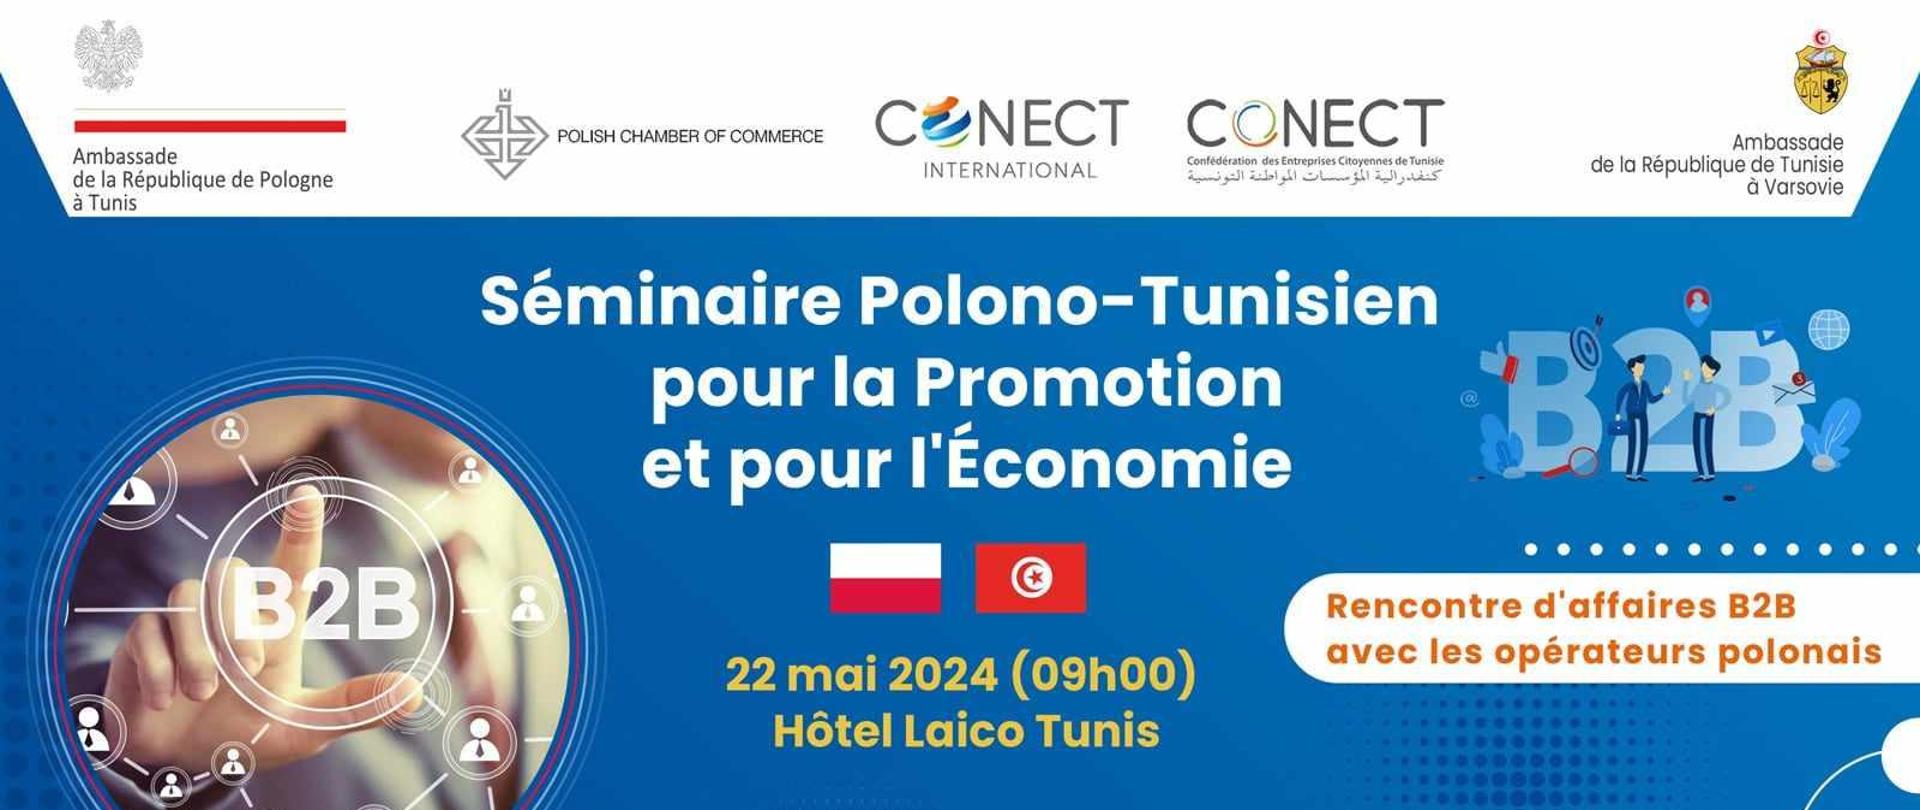 Séminaire Polono-Tunisien pour la Promotion et pour l'Economie